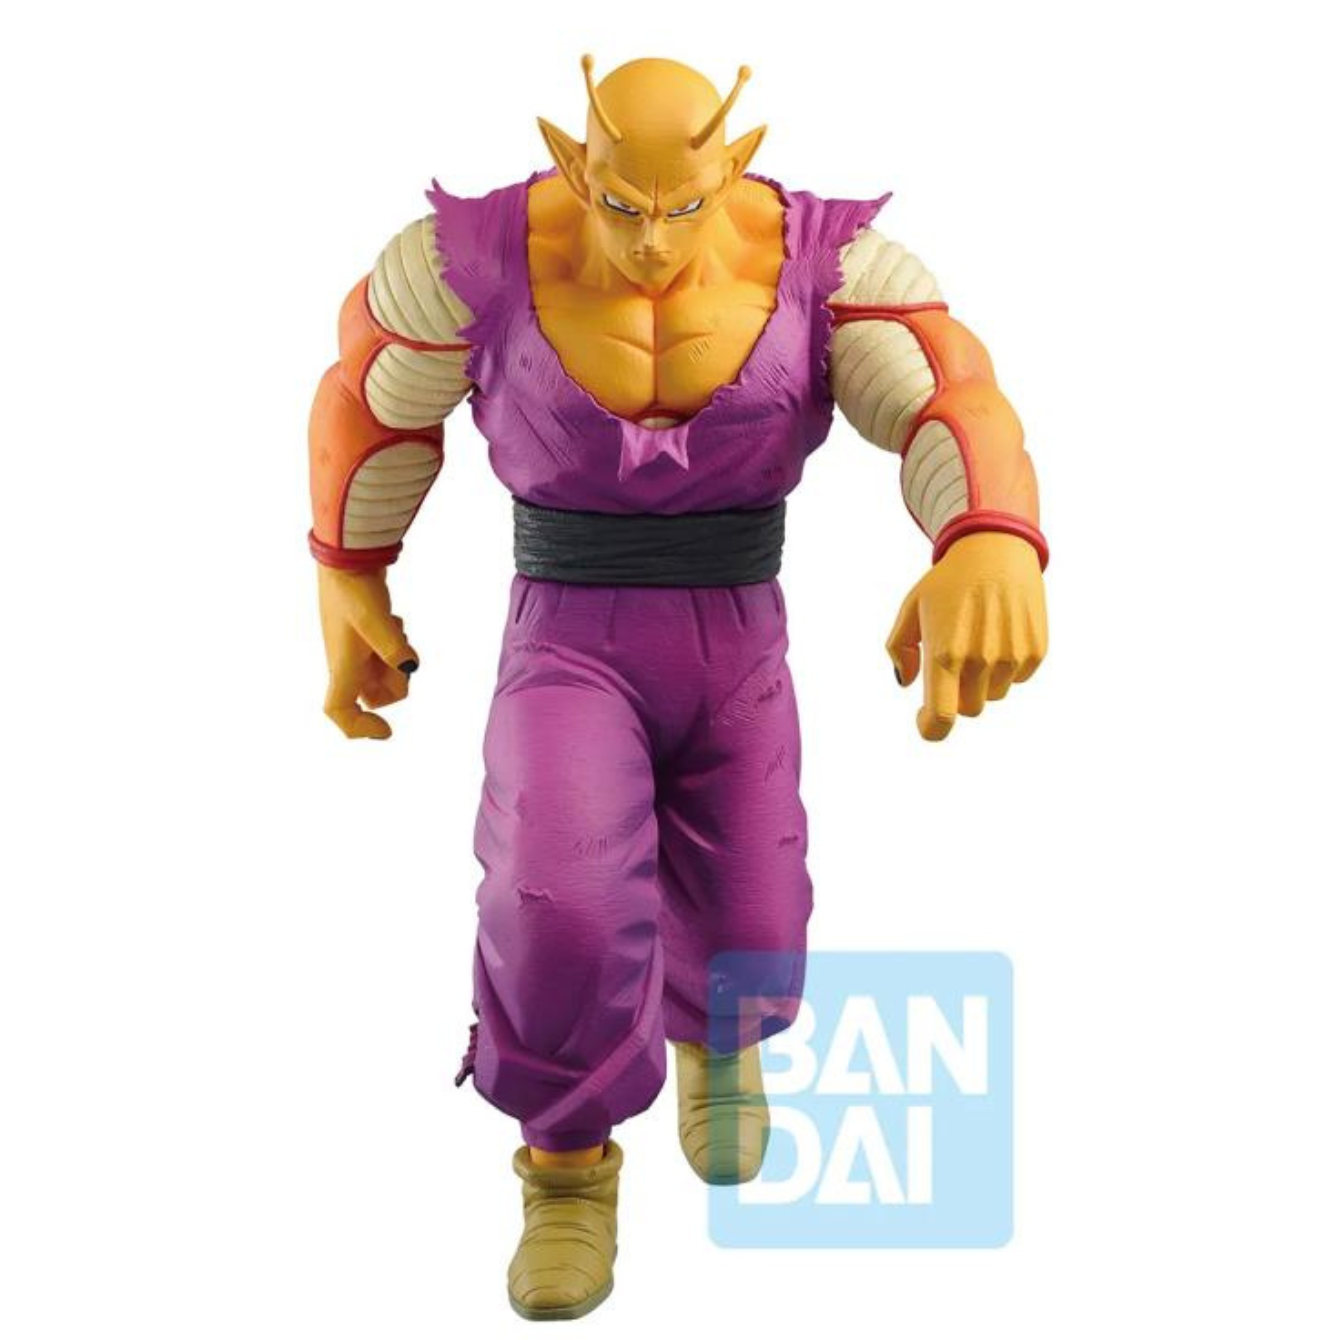 Orange Piccolo (VS Omnibus Beast) "Dragon Ball Super: Super Hero", Bandai Spirits Ichibansho Figure